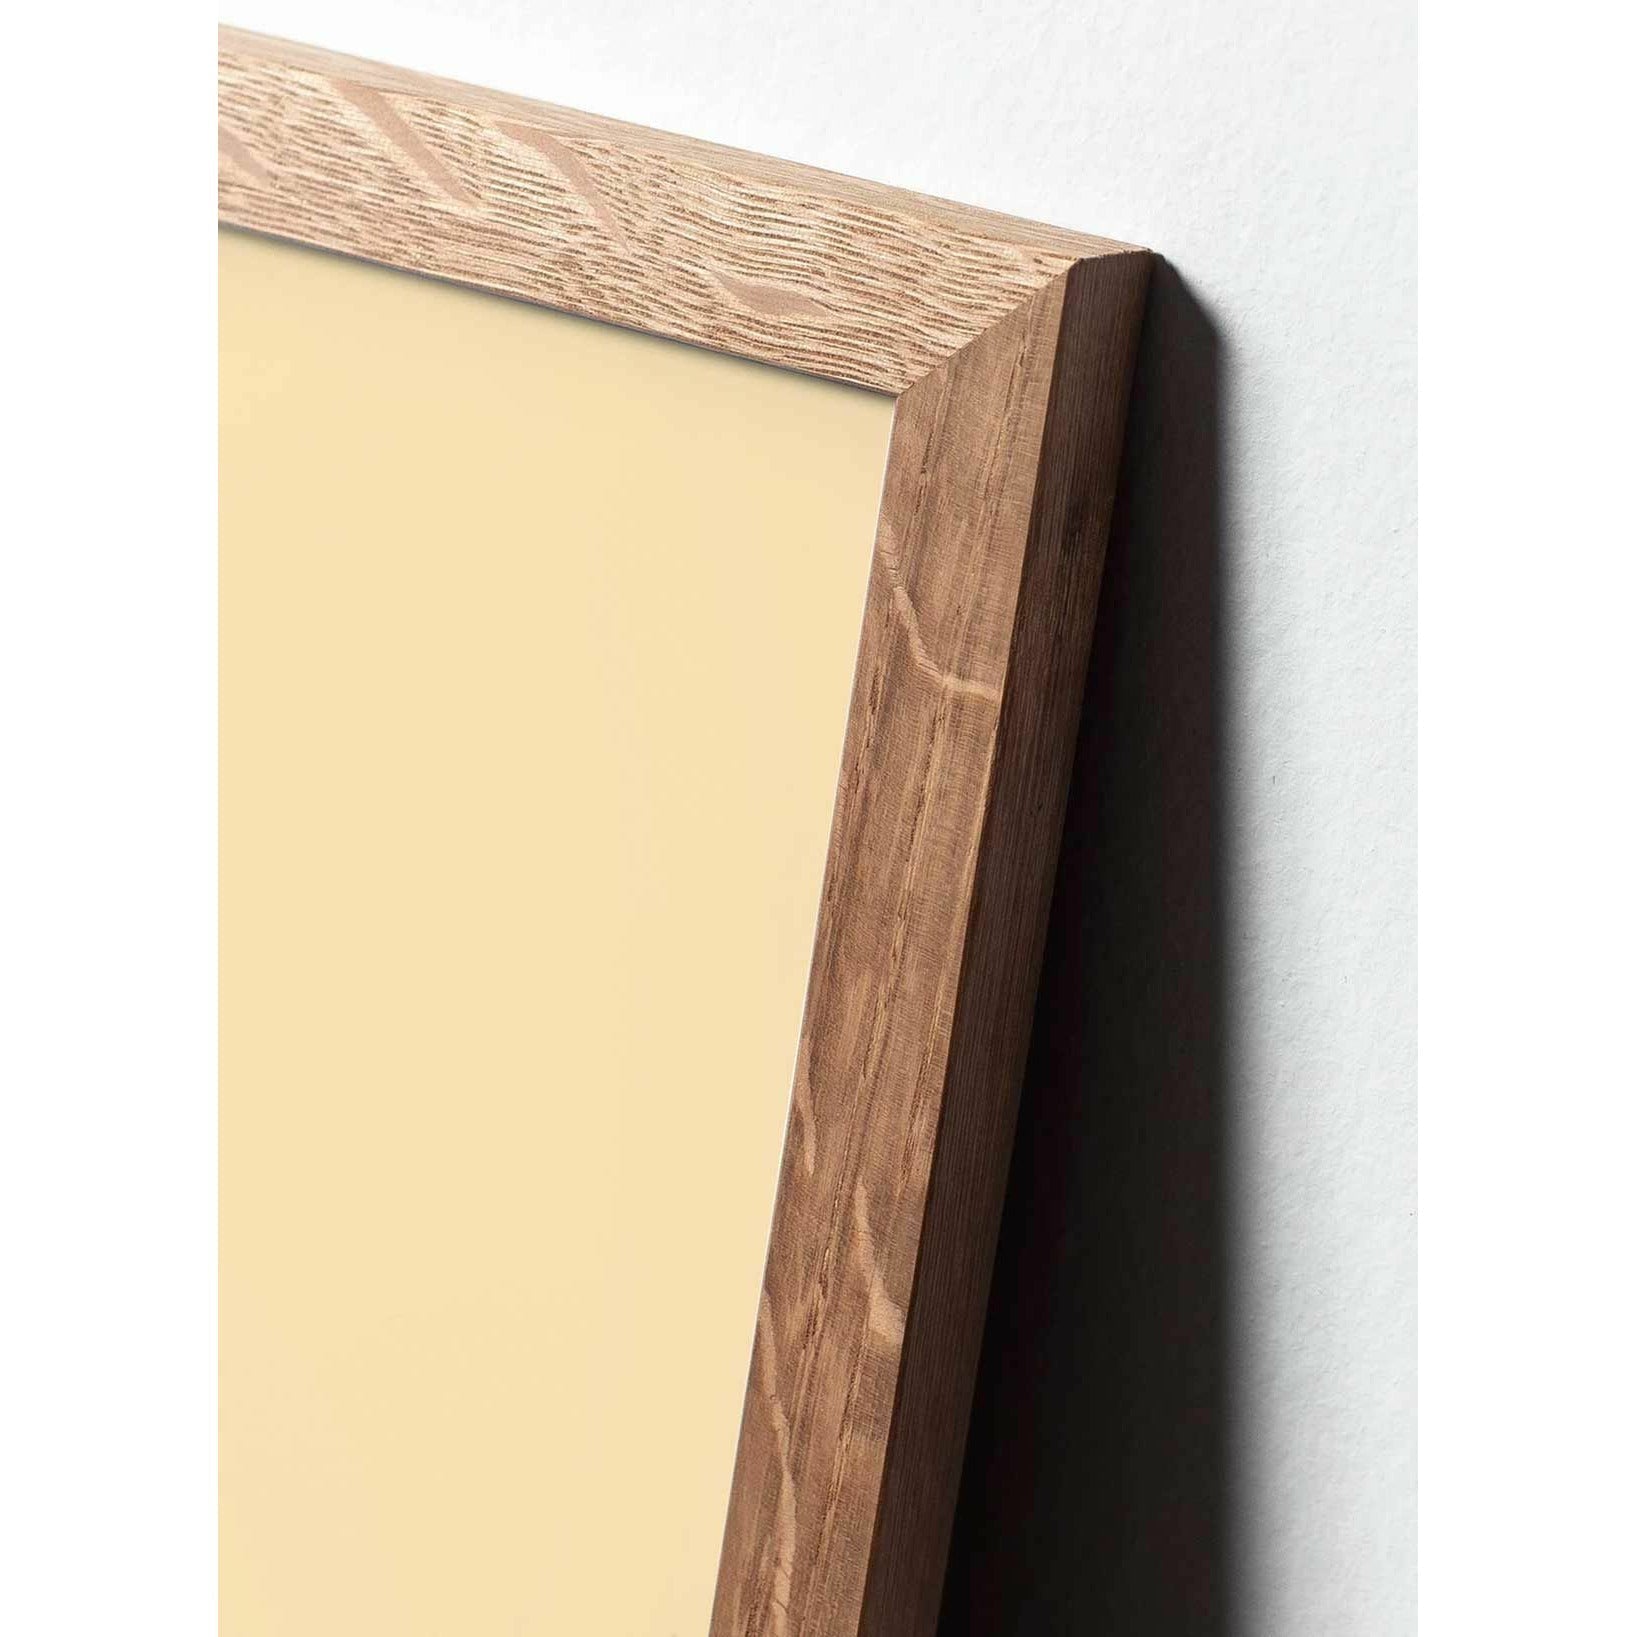 Póster de línea de huevo de precisión, marco en madera clara de 30x40 cm, fondo blanco